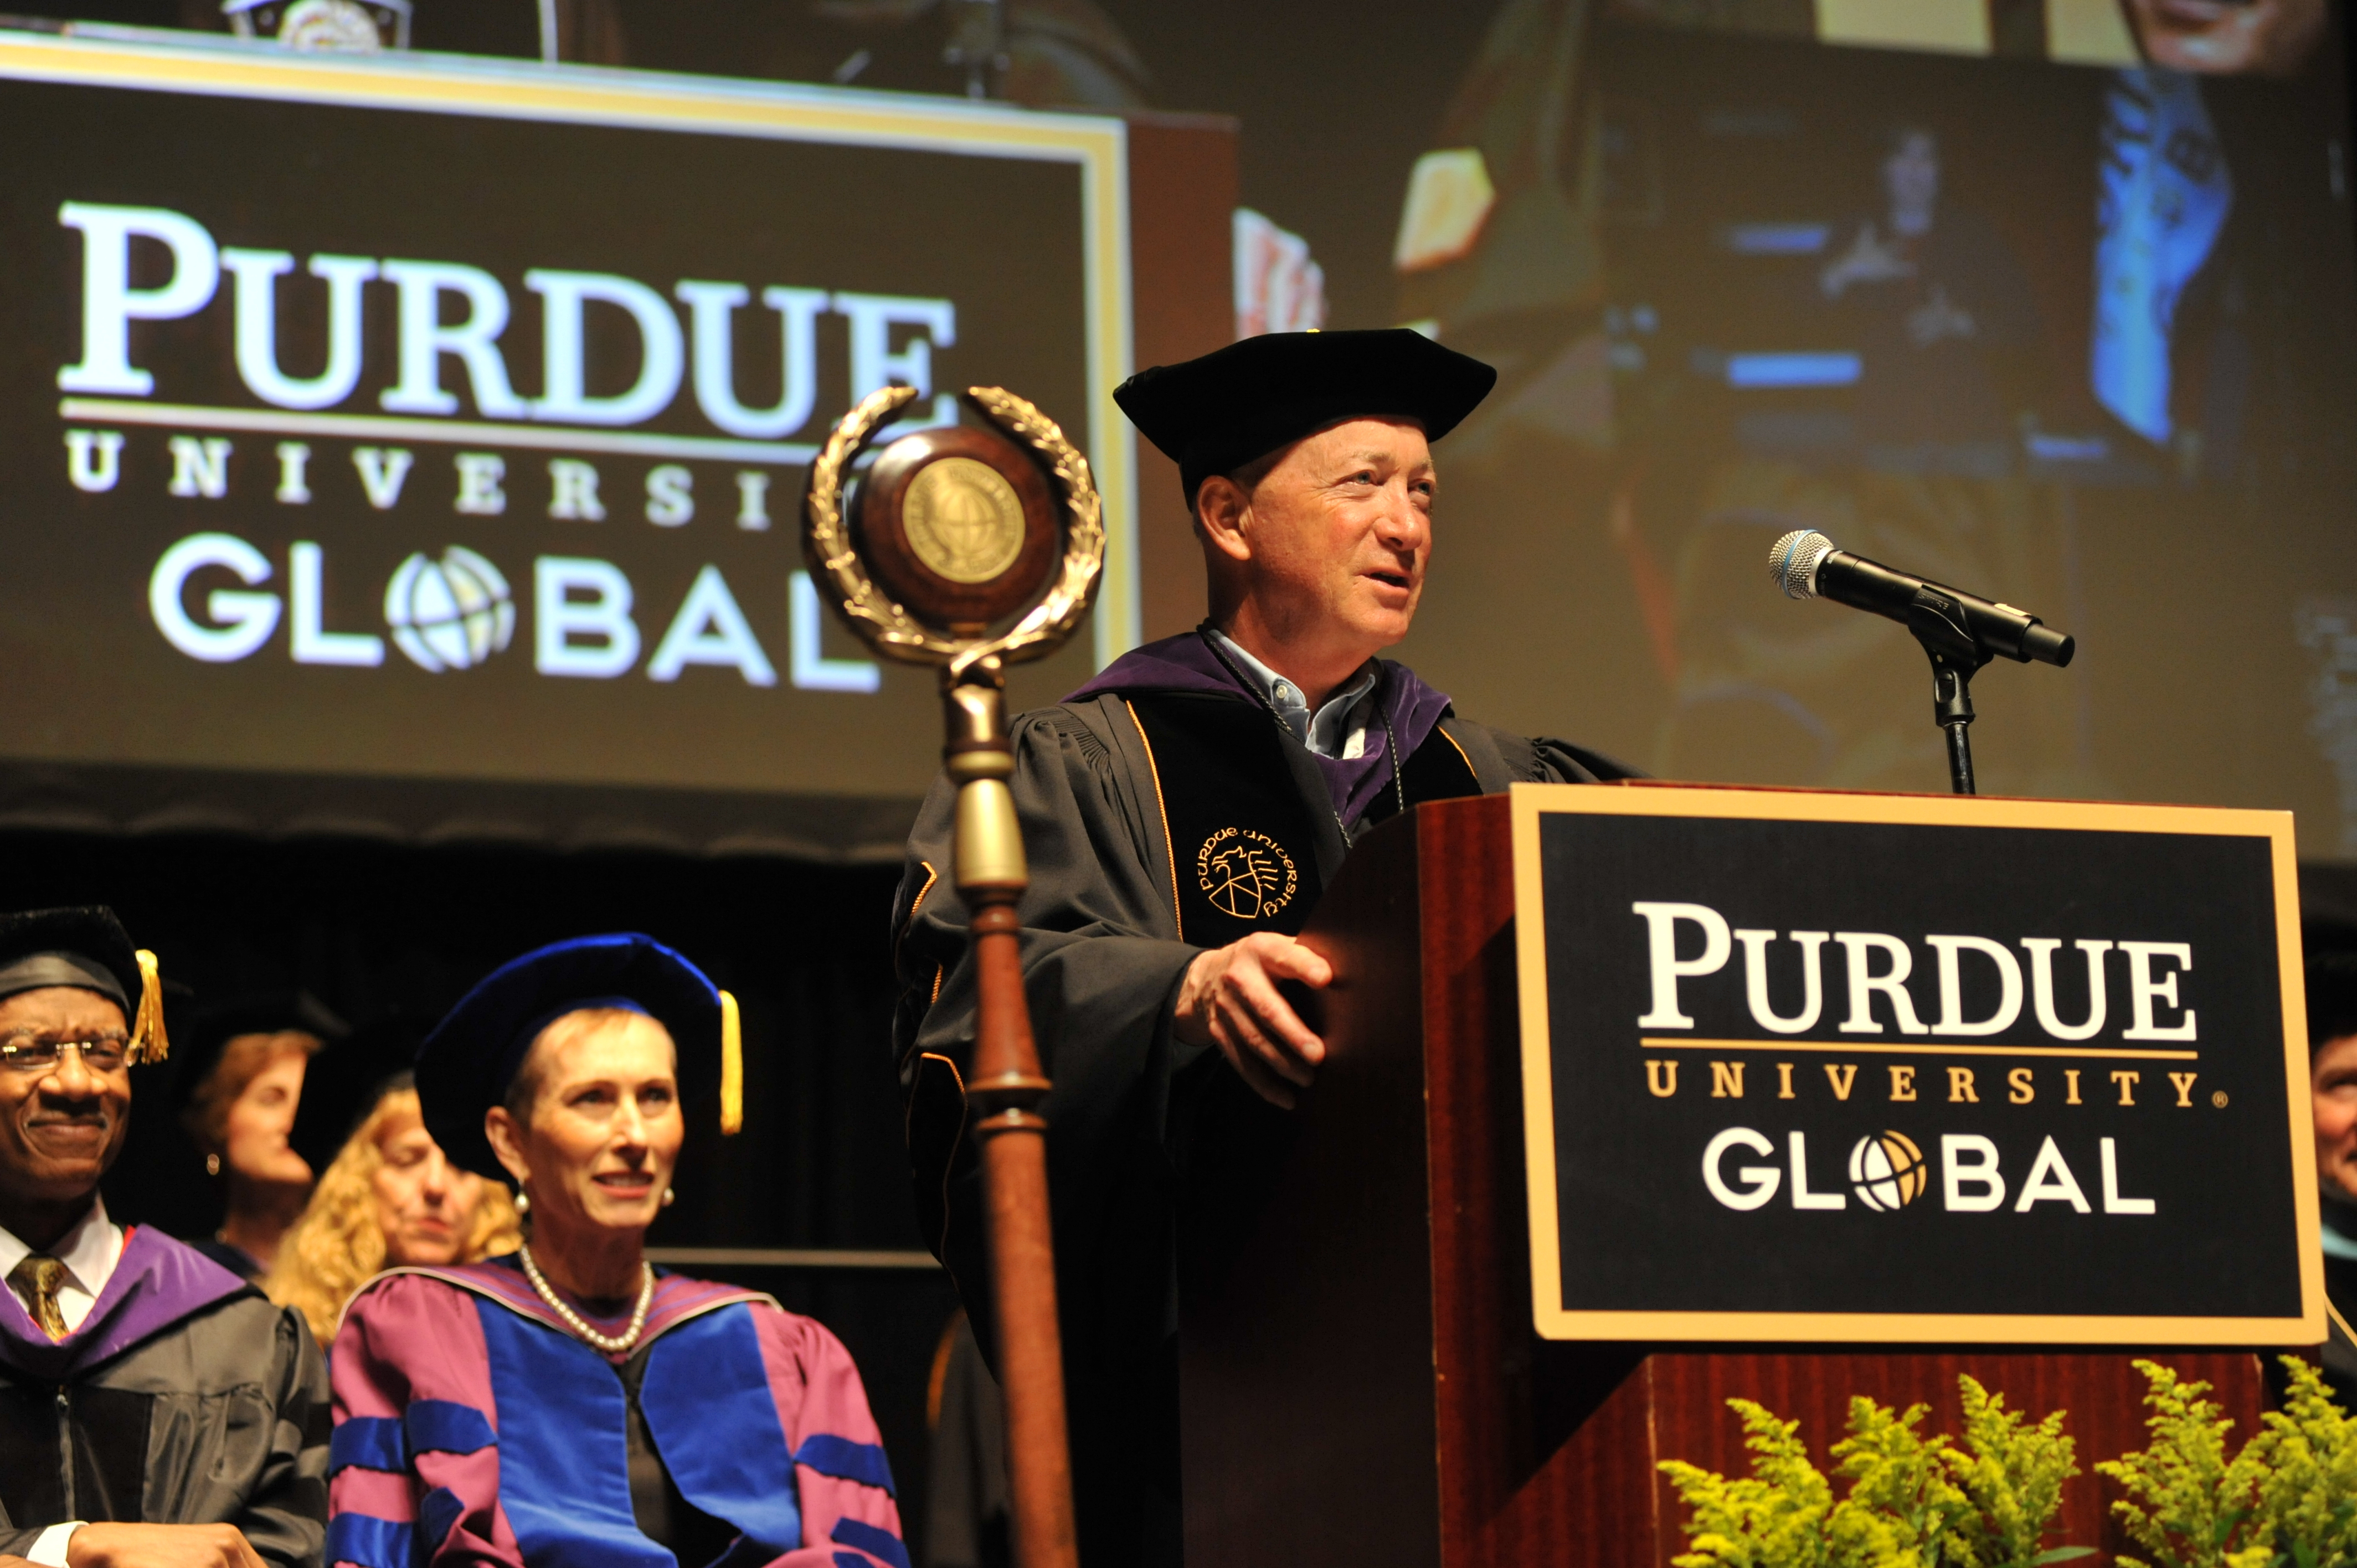 Purdue University Global Hosts Commencement for 600 Graduates